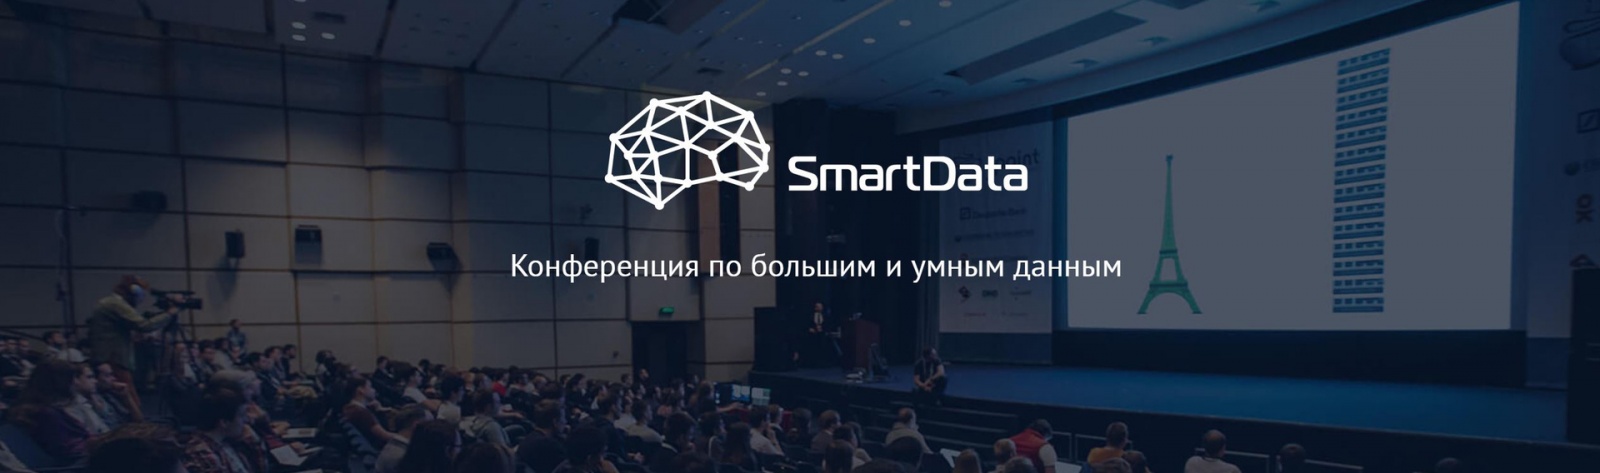 SmartData — новая конференция по большим и умным данным от JUG.ru Group - 1